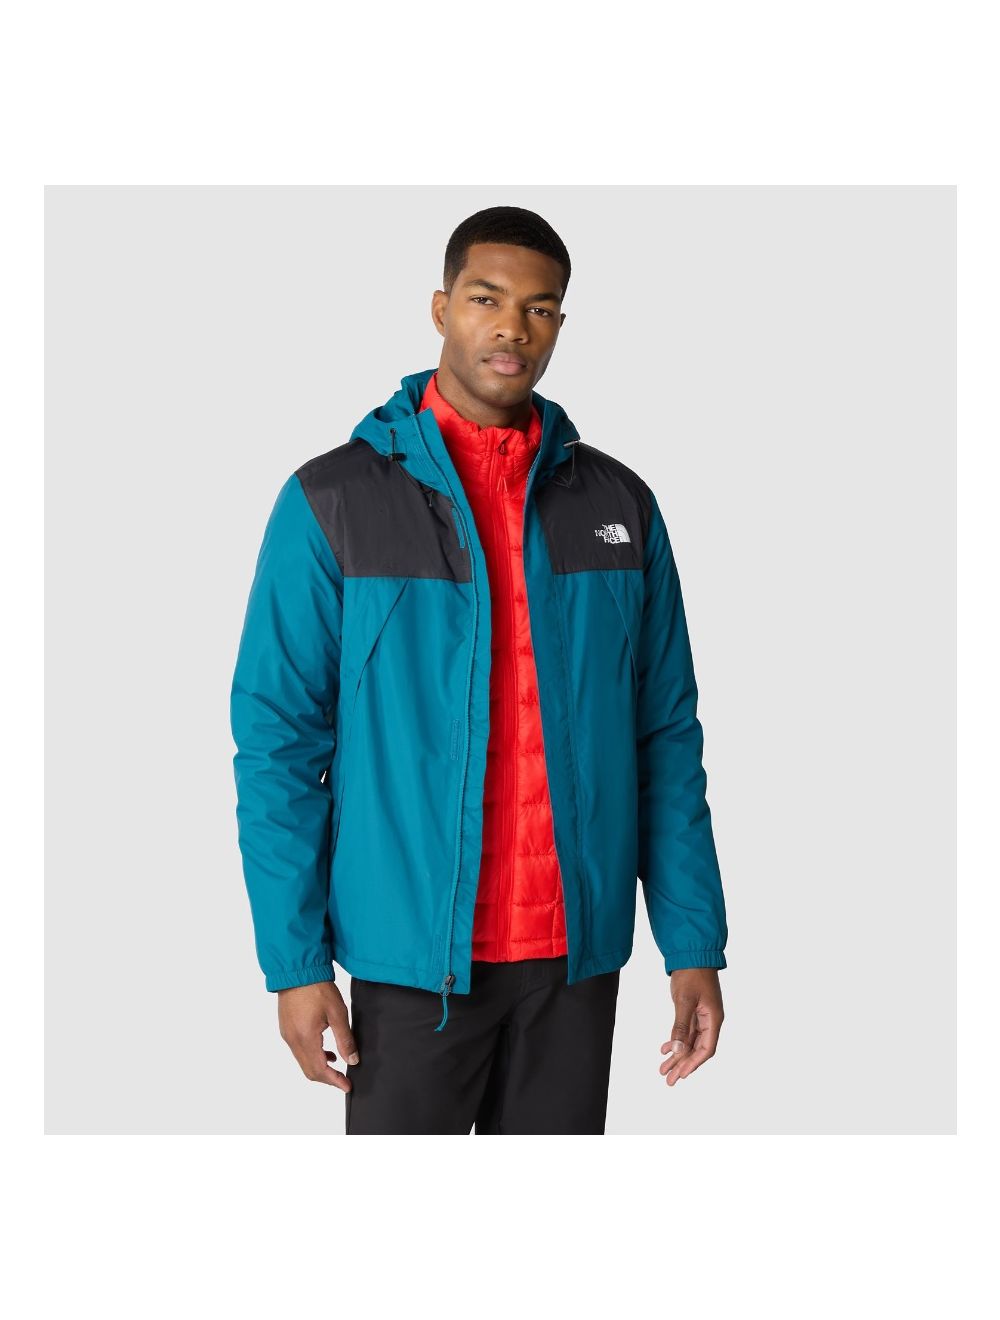 Overvloed aan de andere kant, winnen Het North Face Antora Jacket online kopen? Ronald Adventure Shop